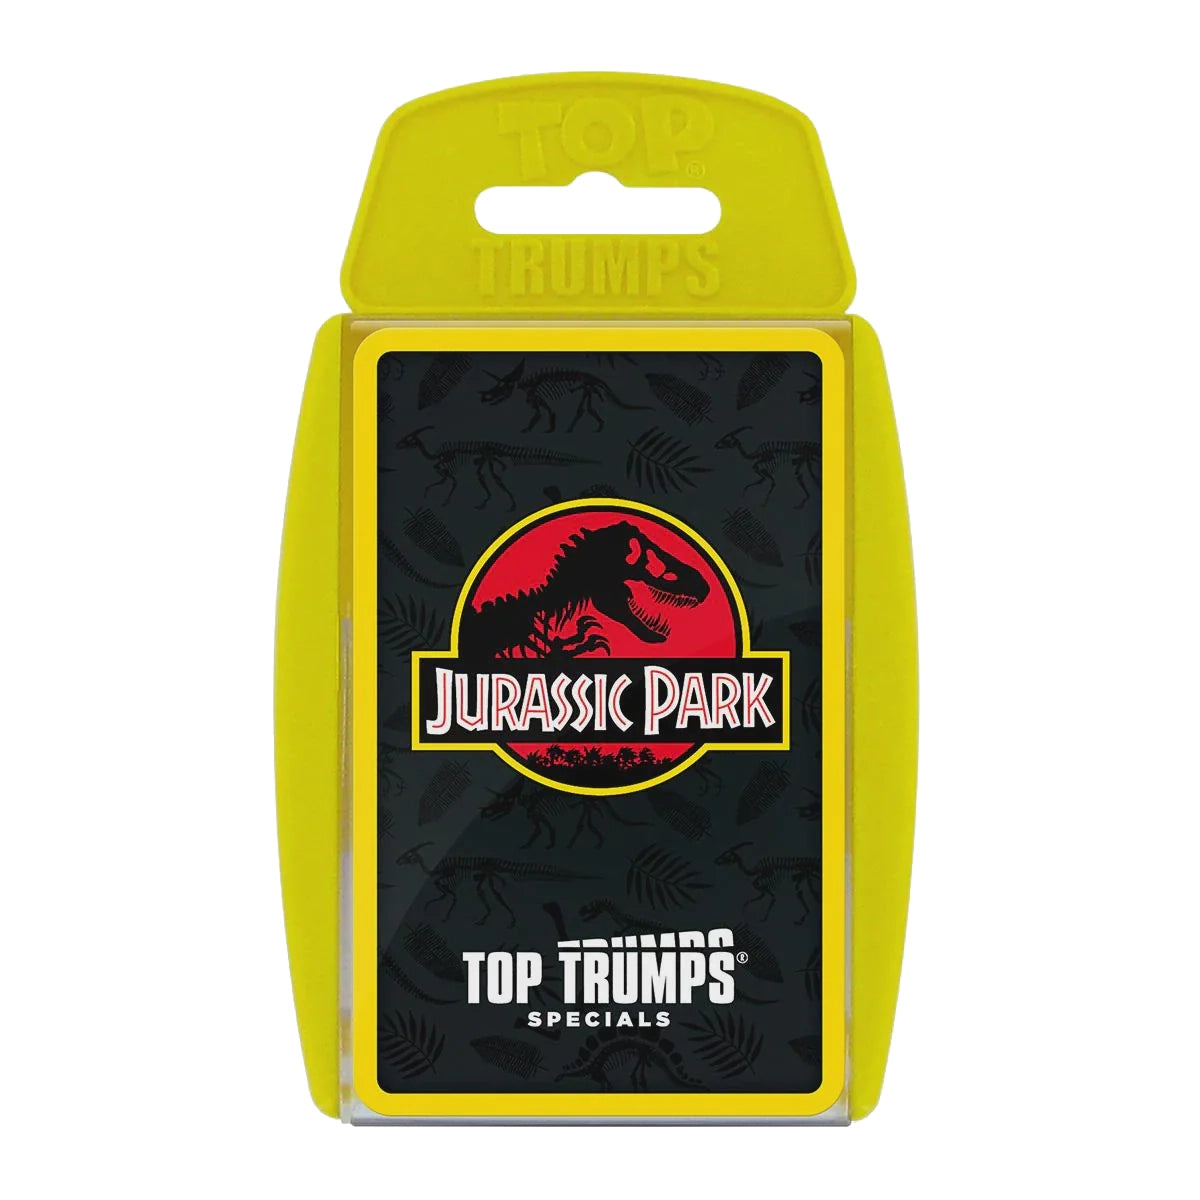 TOP TRUMPS - Jurassic Park